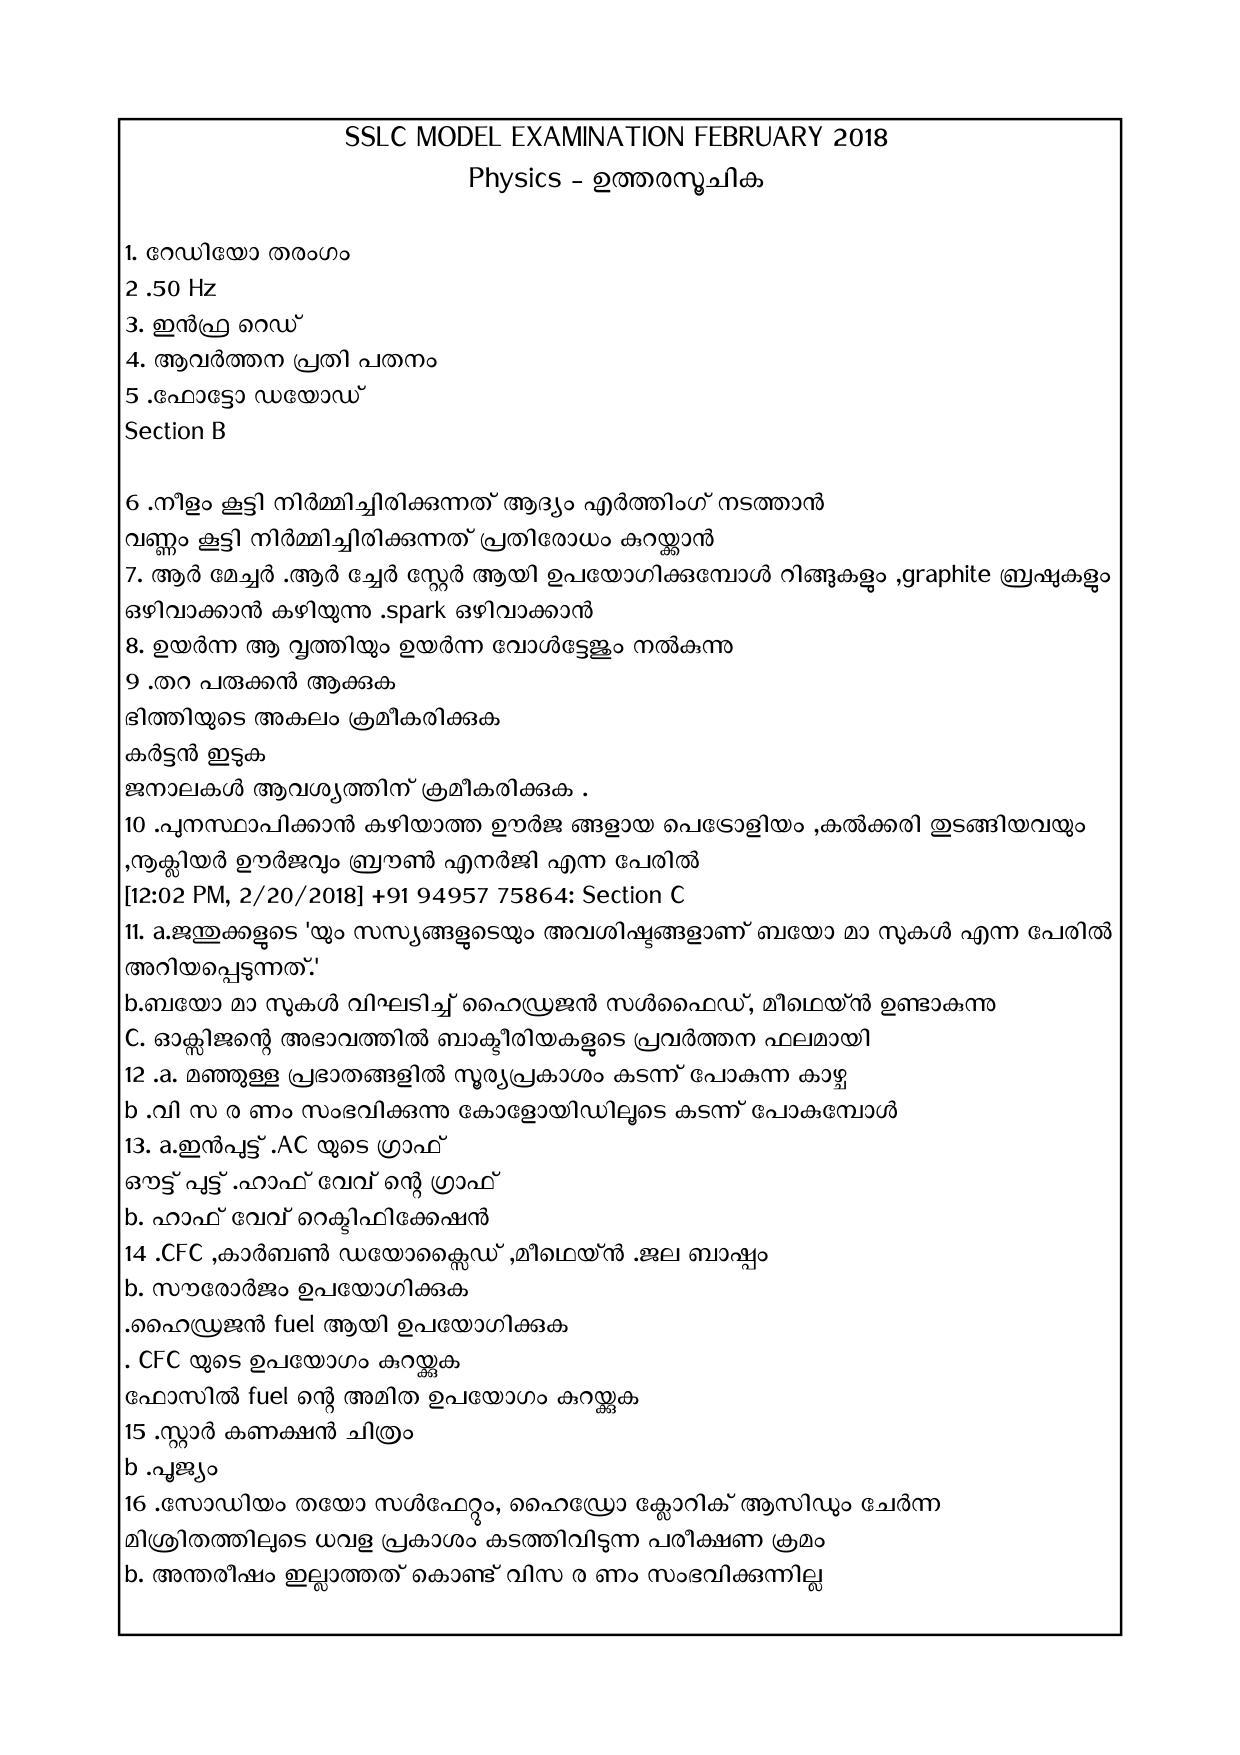 Kerala SSLC 2018 Physics Answer Key (Model) - Page 1